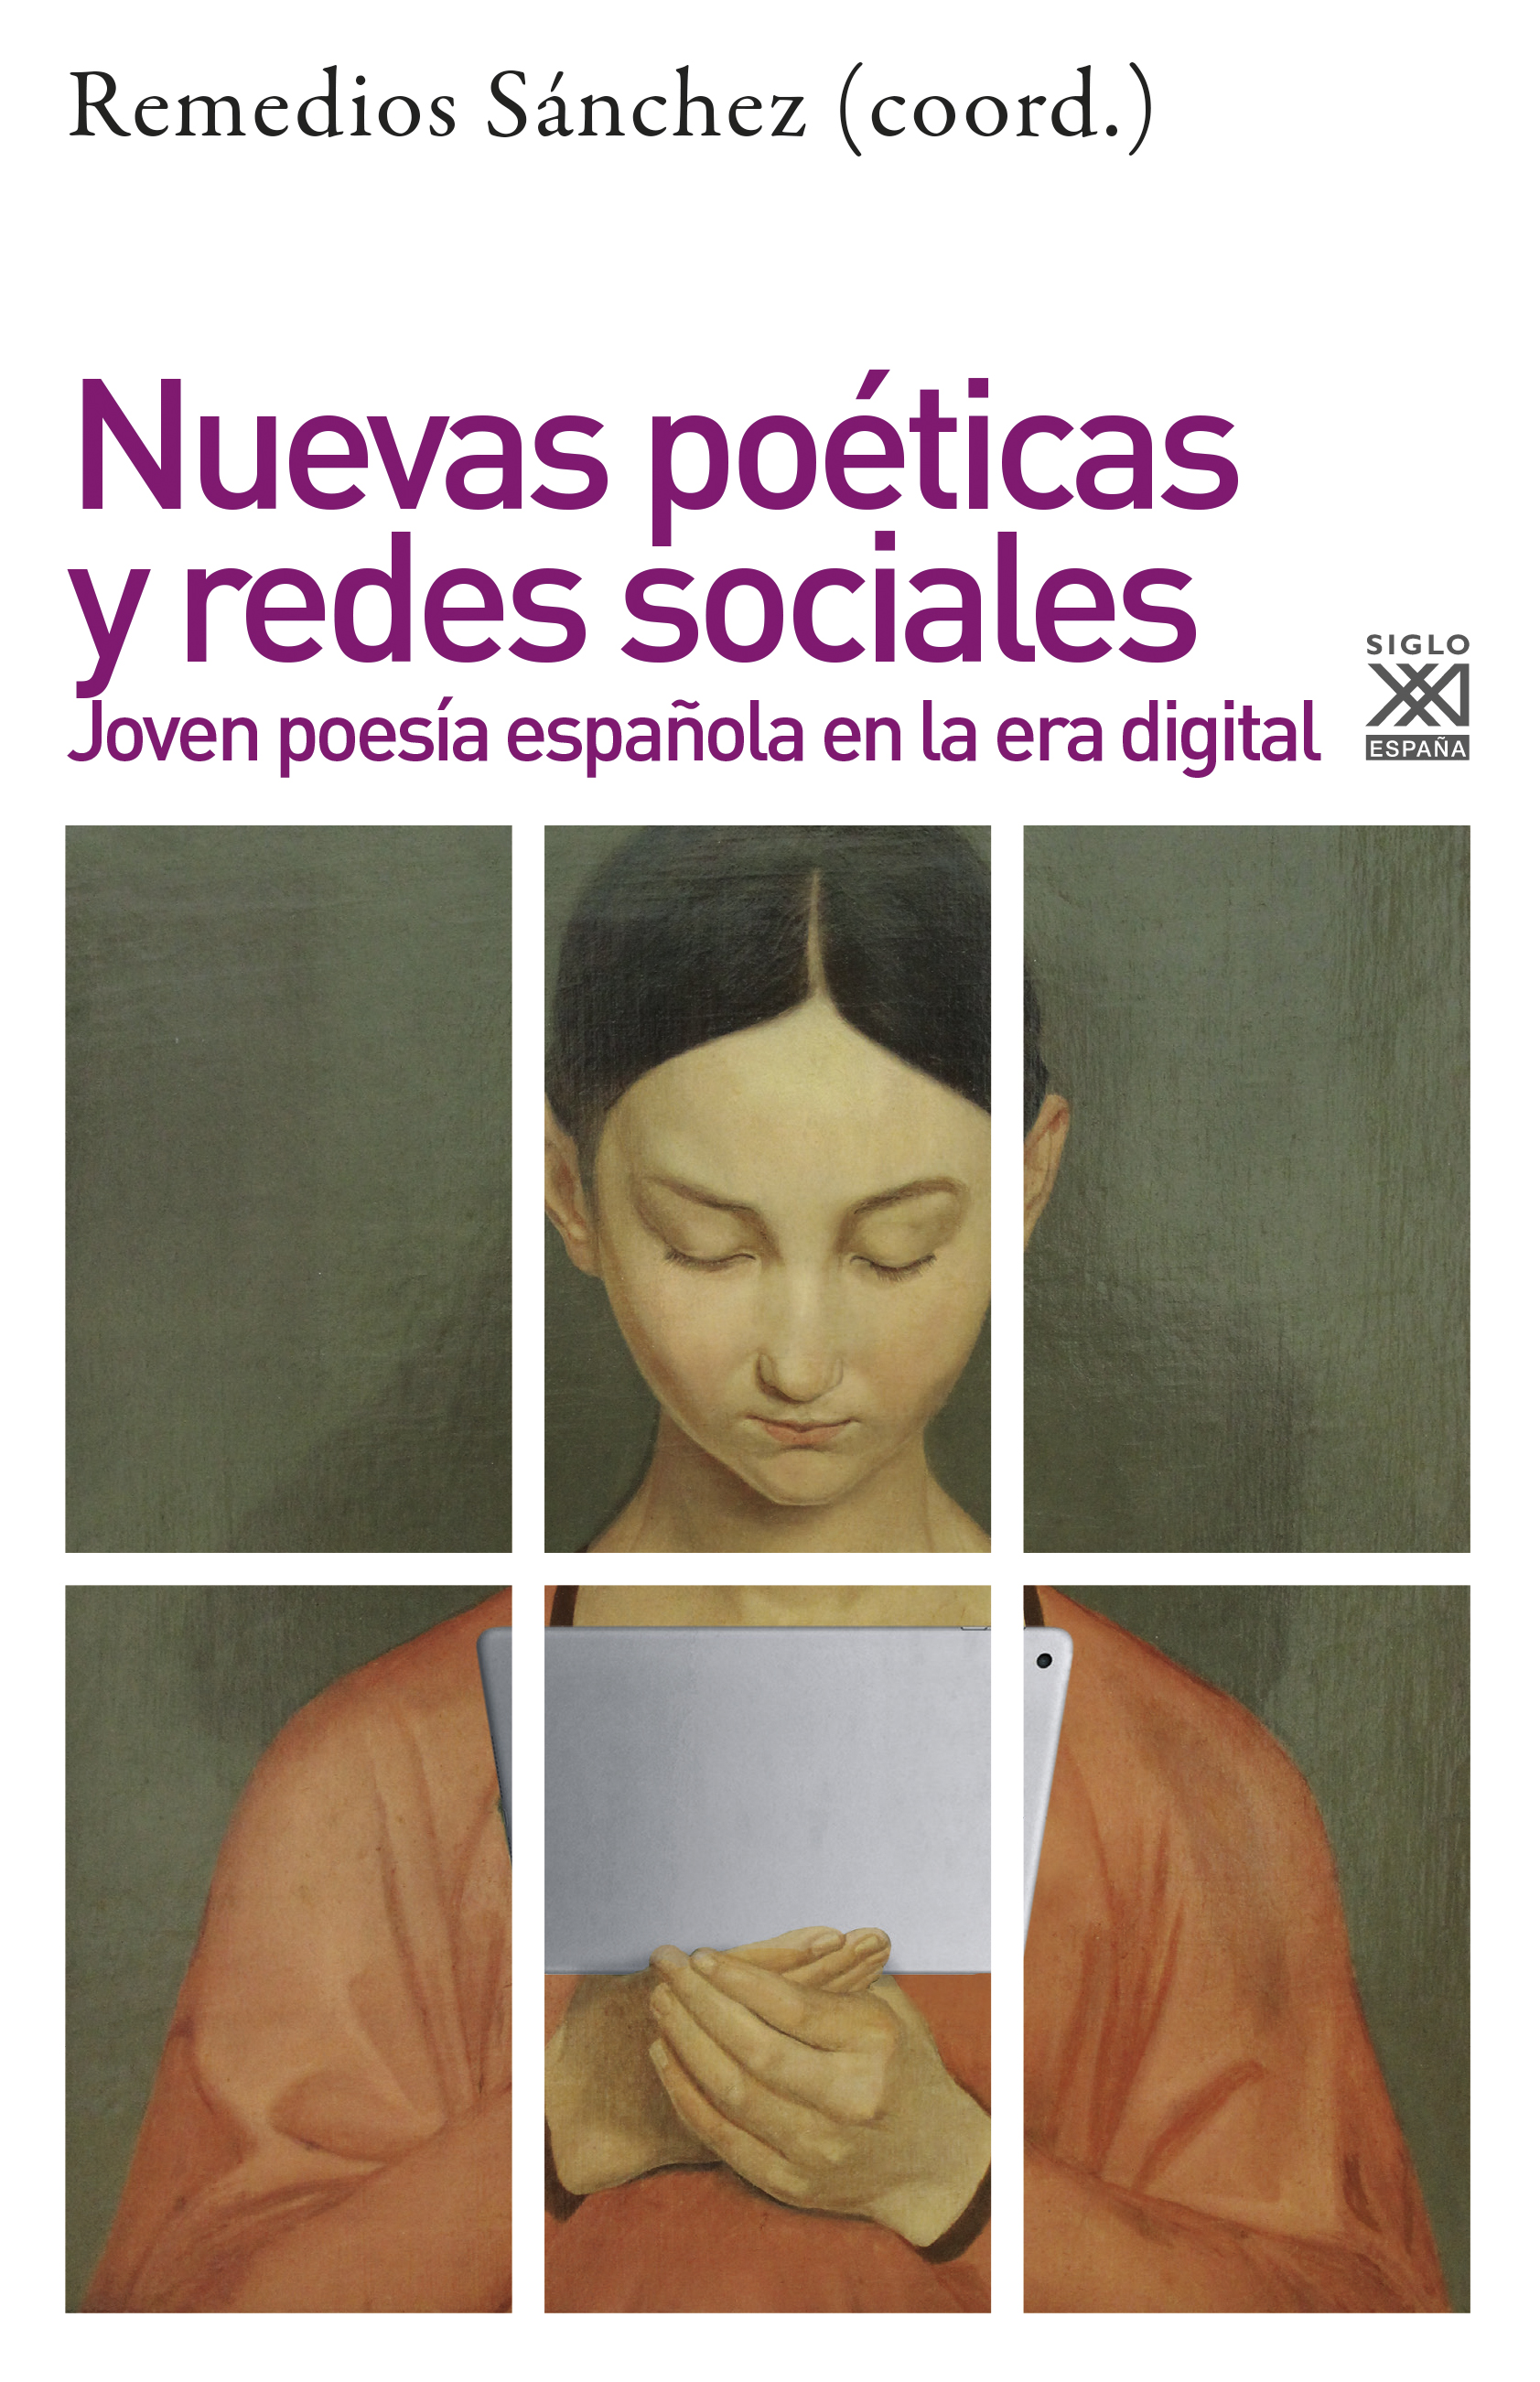 Imagen de portada del libro Nuevas poéticas y redes sociales